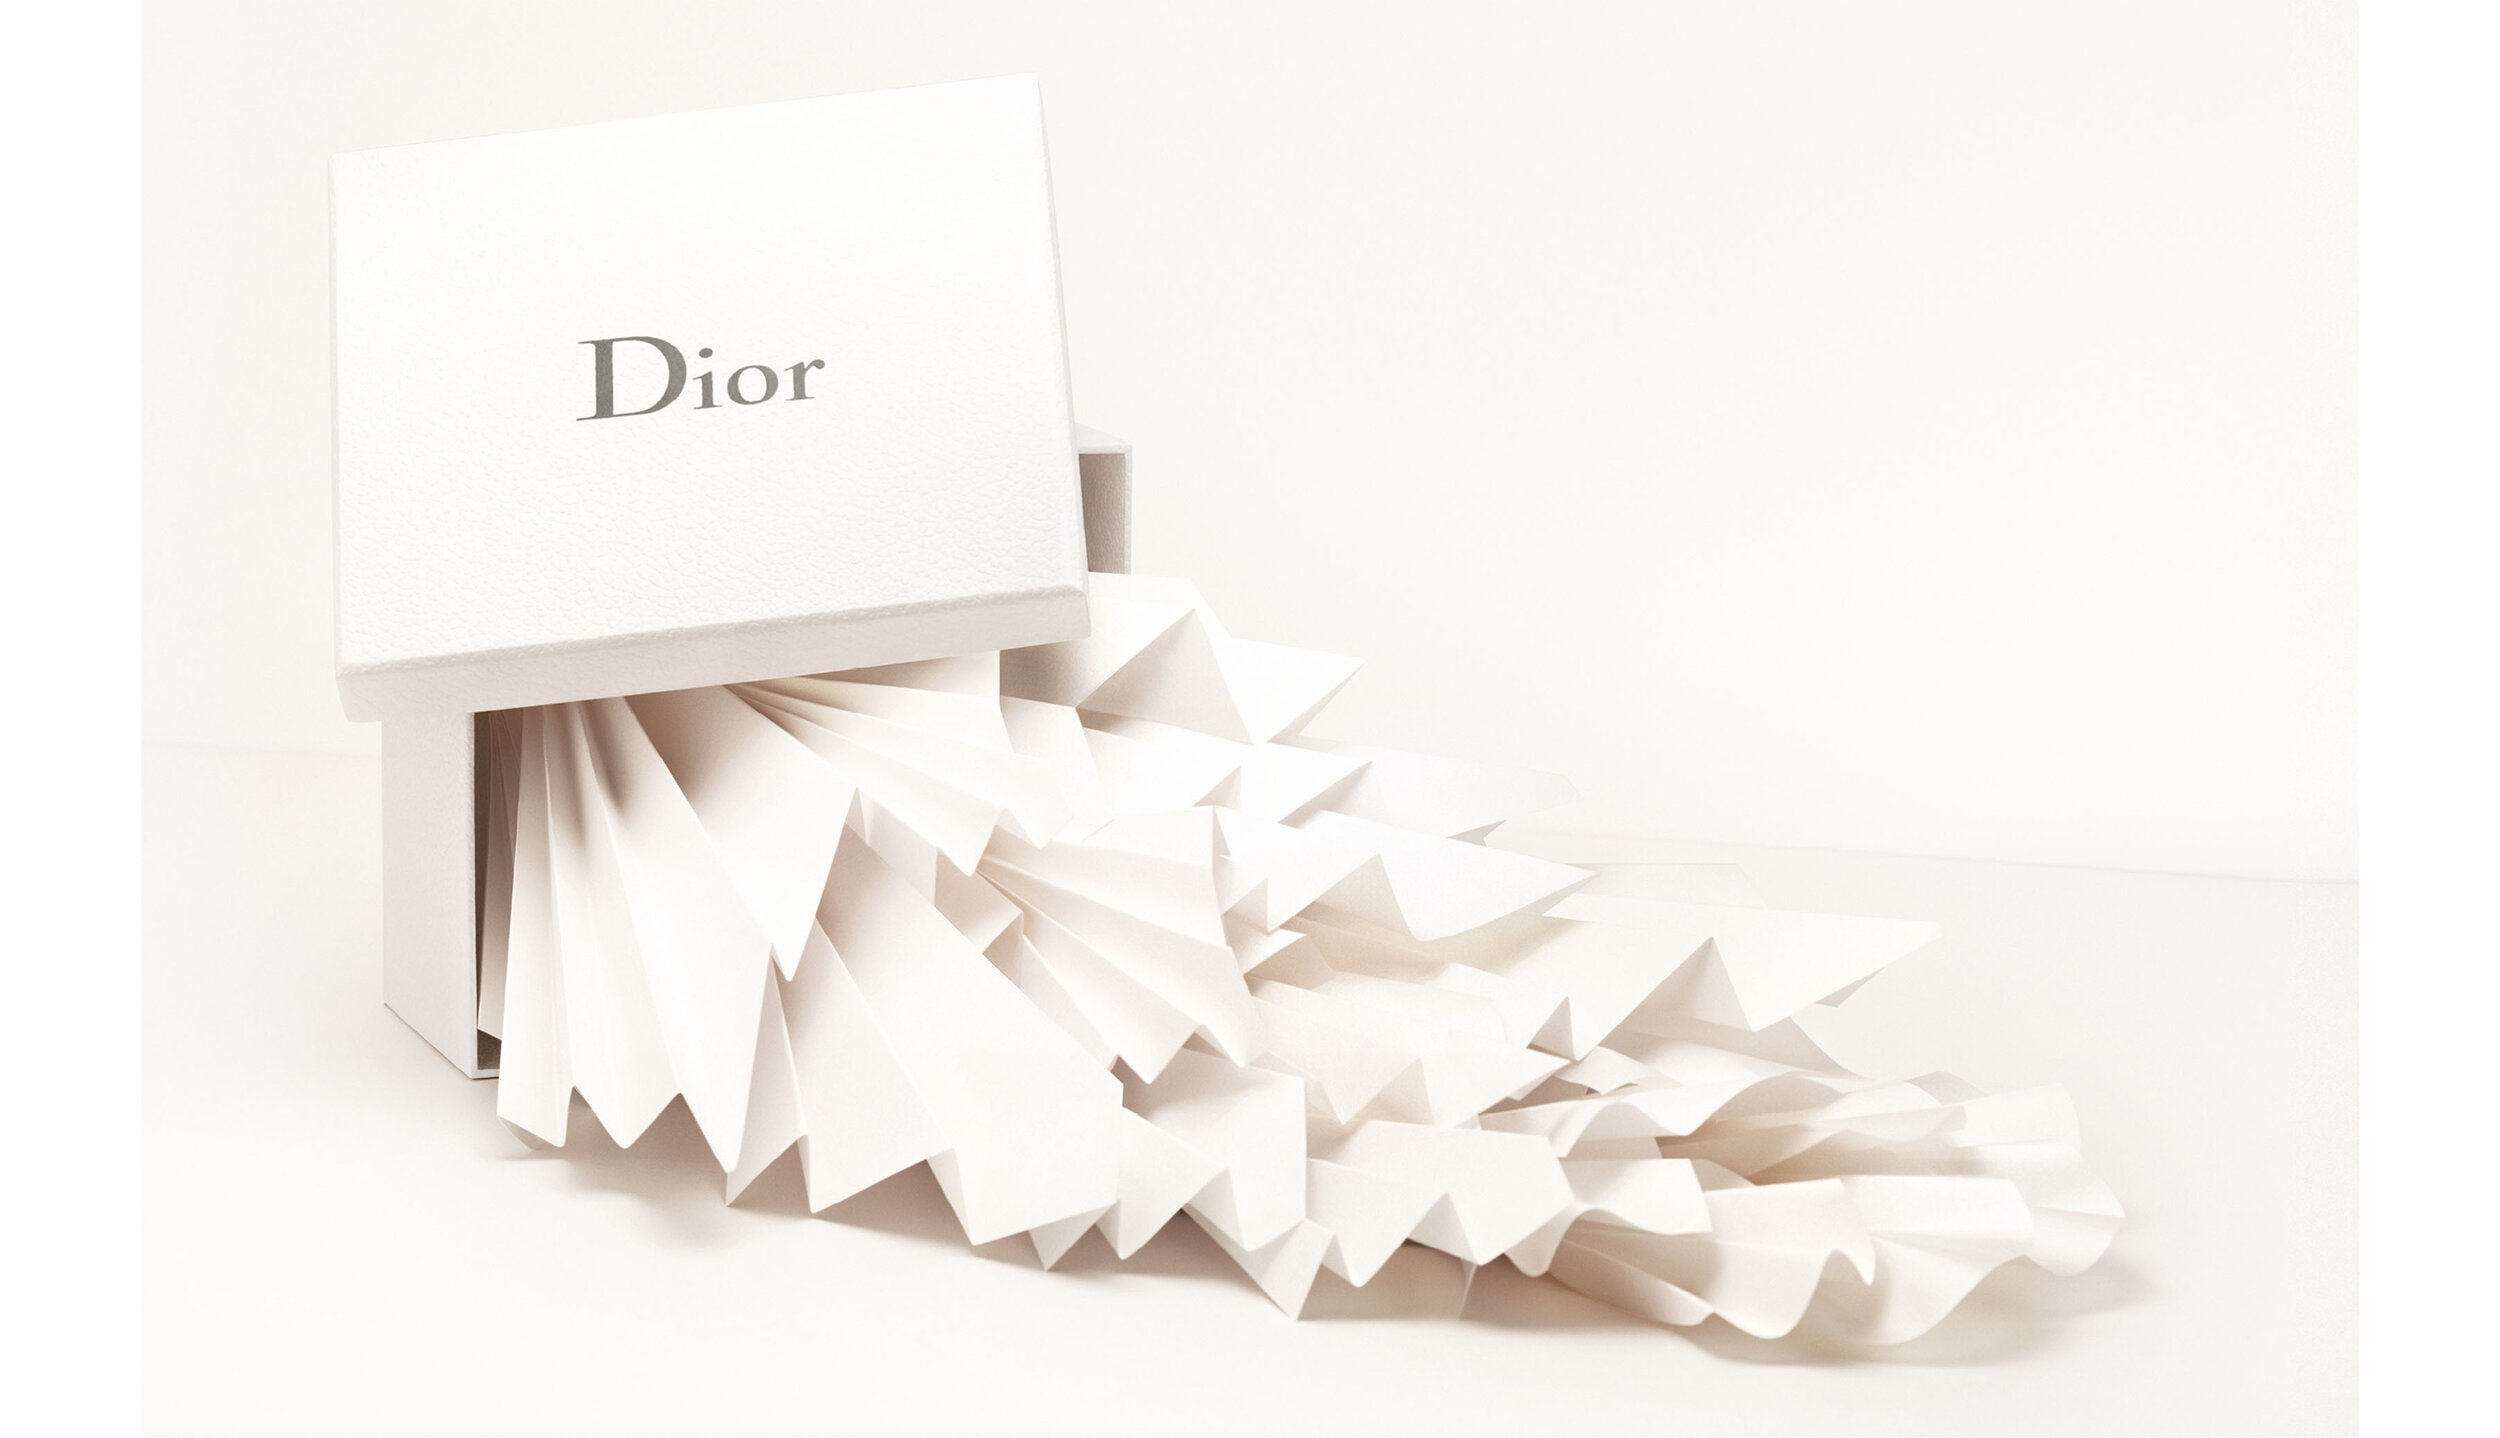 dior-perfume-campaign-advertising-design-paper-zoebradley-socailbutterflies-blue-paperbutterflies-paper-art-paperart-art-design-fashion.jpg